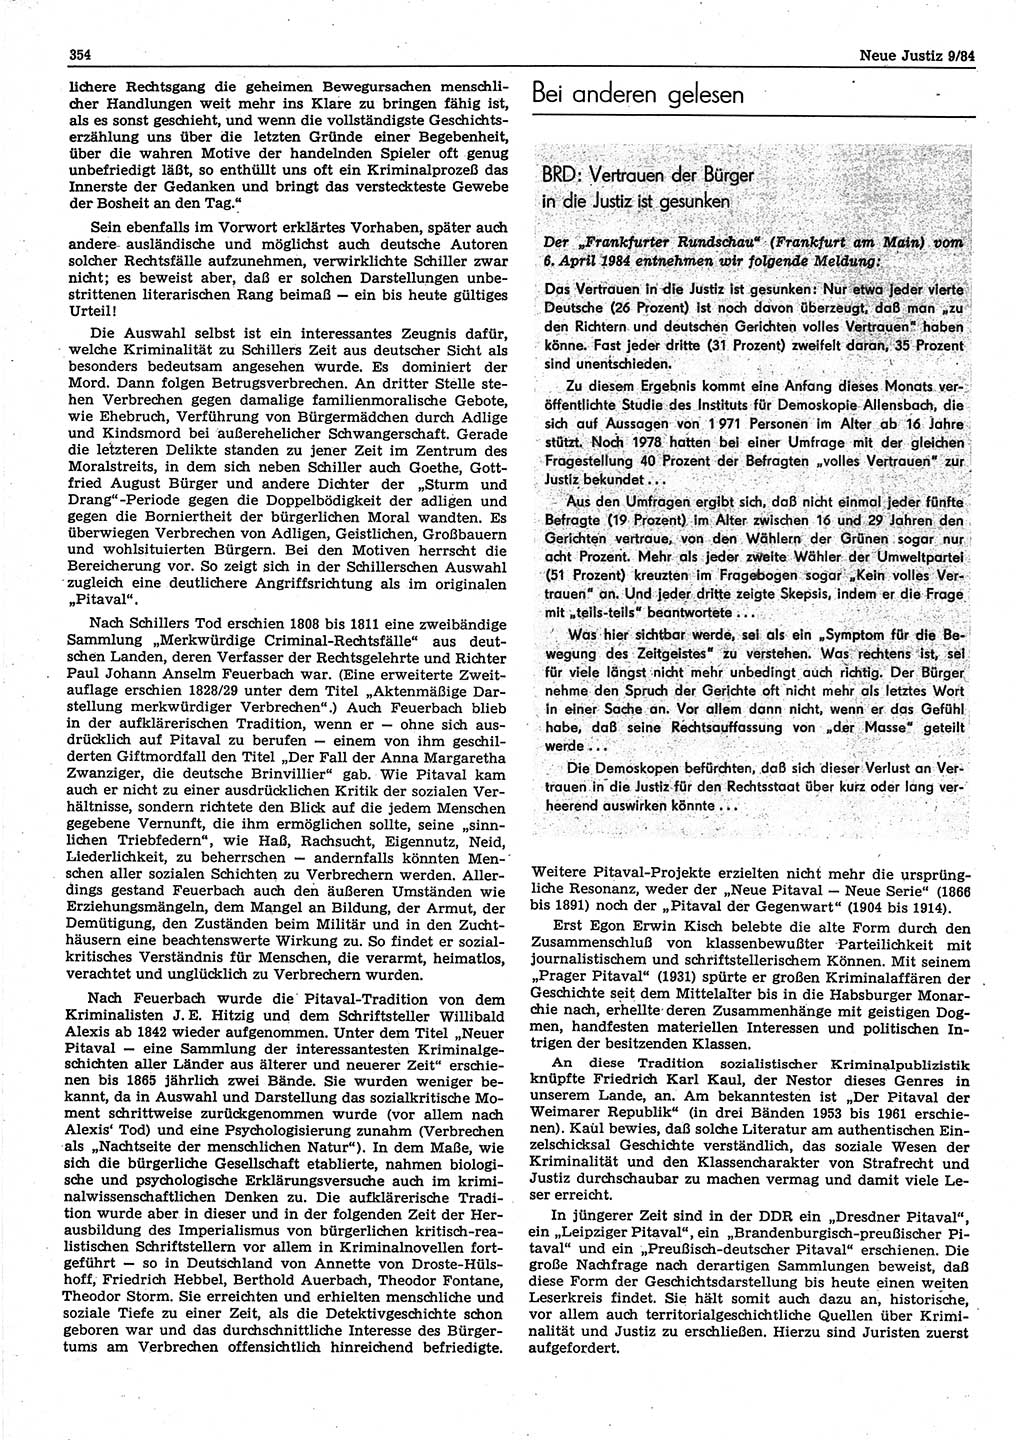 Neue Justiz (NJ), Zeitschrift für sozialistisches Recht und Gesetzlichkeit [Deutsche Demokratische Republik (DDR)], 38. Jahrgang 1984, Seite 354 (NJ DDR 1984, S. 354)